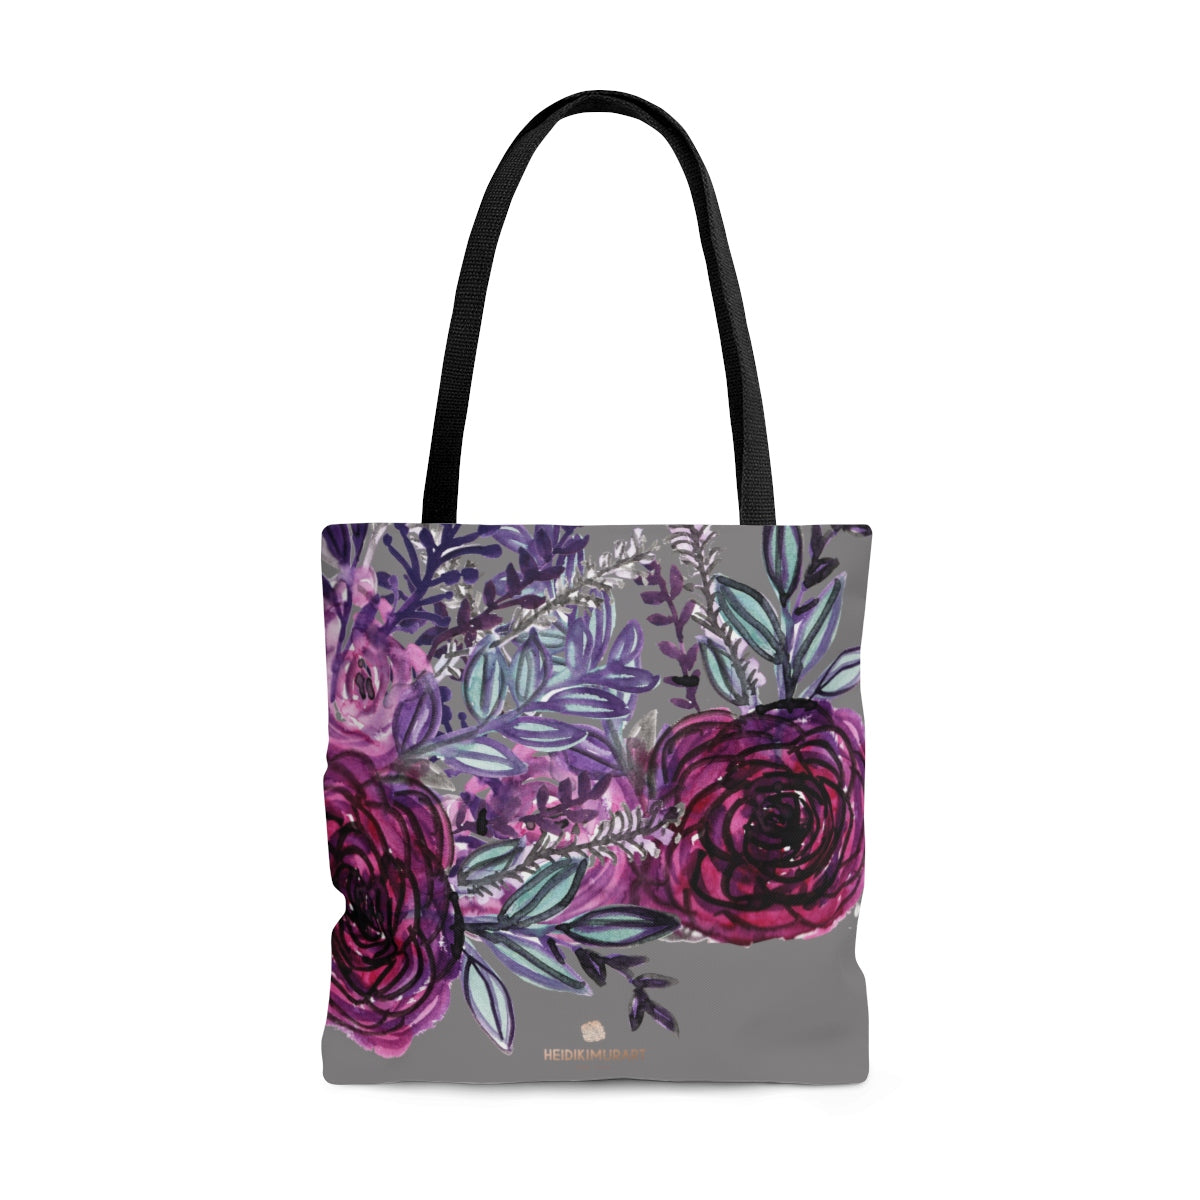 Gray Rose Floral Tote Bag, Flower Print Women's Premium Market Tote Bag - Made in USA-Tote Bag-Large-Heidi Kimura Art LLC